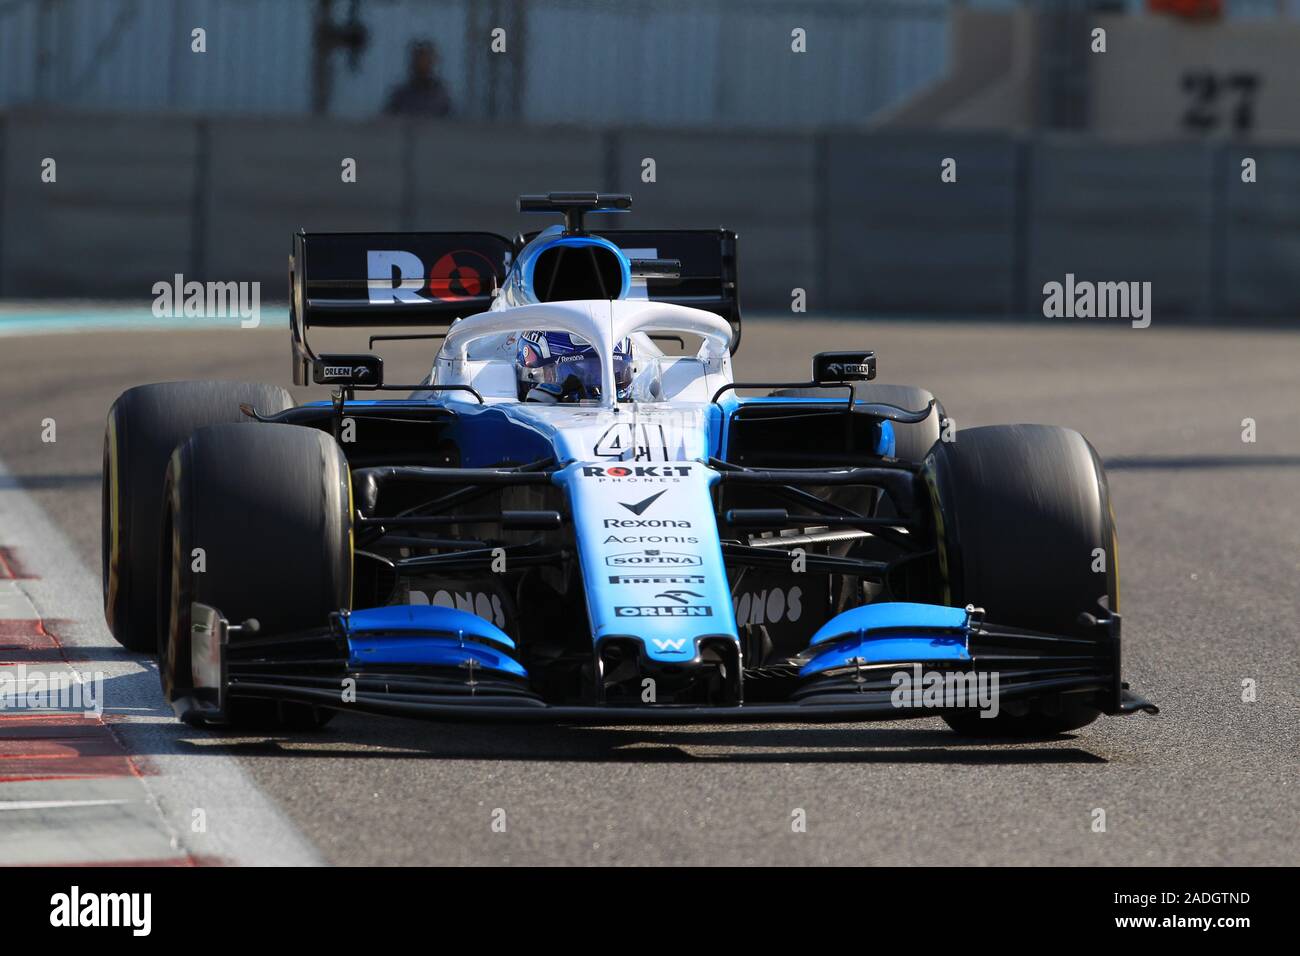 Abu Dhabi, VAE. 04 Dez, 2019. 4. Dezember 2019, Yas Marina Circuit, Abu Dhabi, Vereinigte Arabische Emirate; Pirelli Formel 1 Reifen Testsitzungen; ROKiT Williams Racing, Roy Nissany Credit: Aktion Plus Sport Bilder/Alamy leben Nachrichten Stockfoto